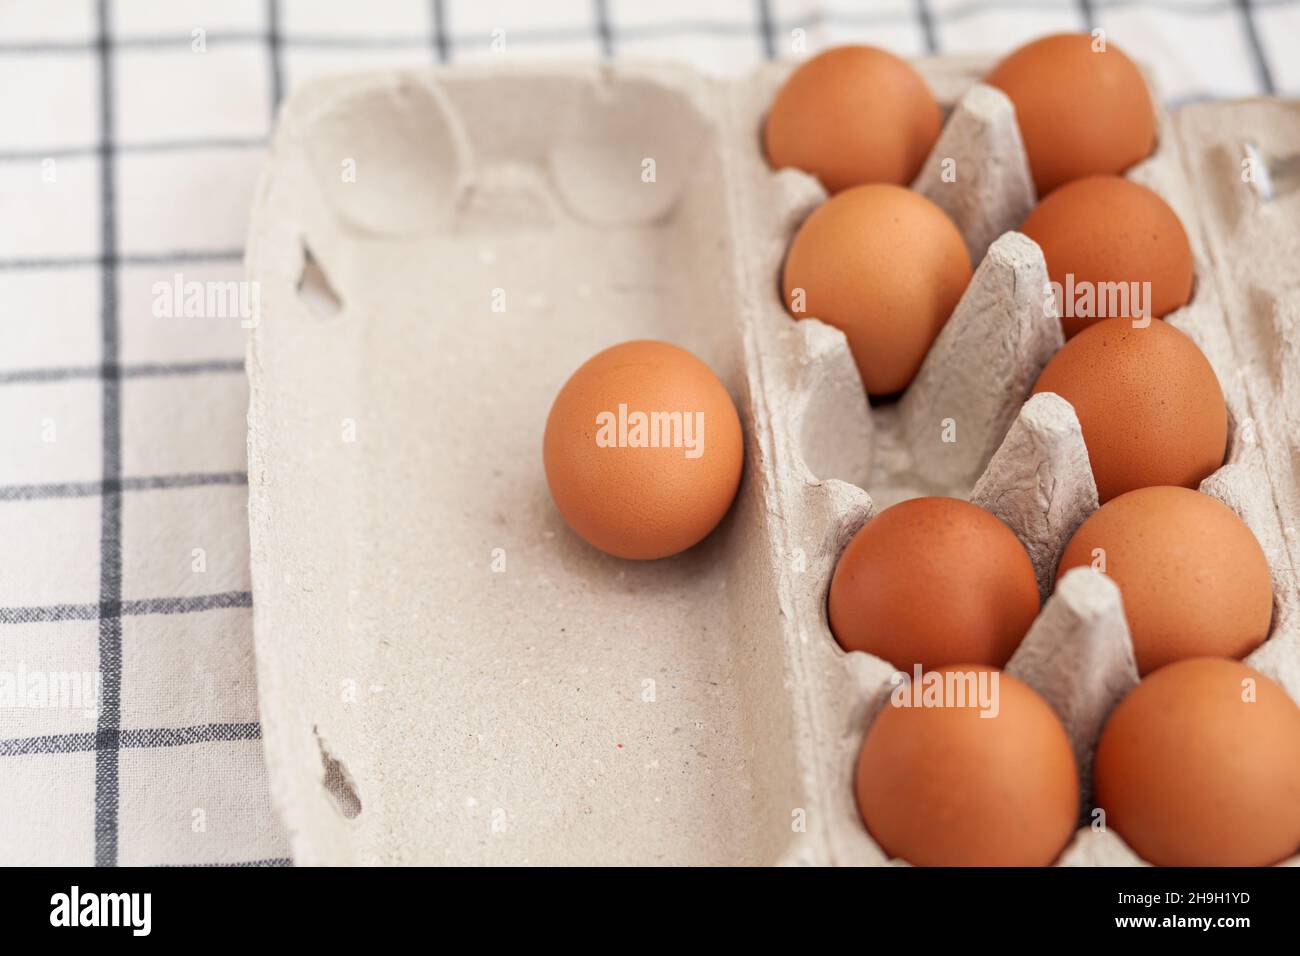 Unos huevos marrones entre las células de una bolsa grande de cartón, un  huevo de pollo como un producto nutritivo valioso, una bandeja para llevar  y almacenar huevos frágiles Fotografía de stock -